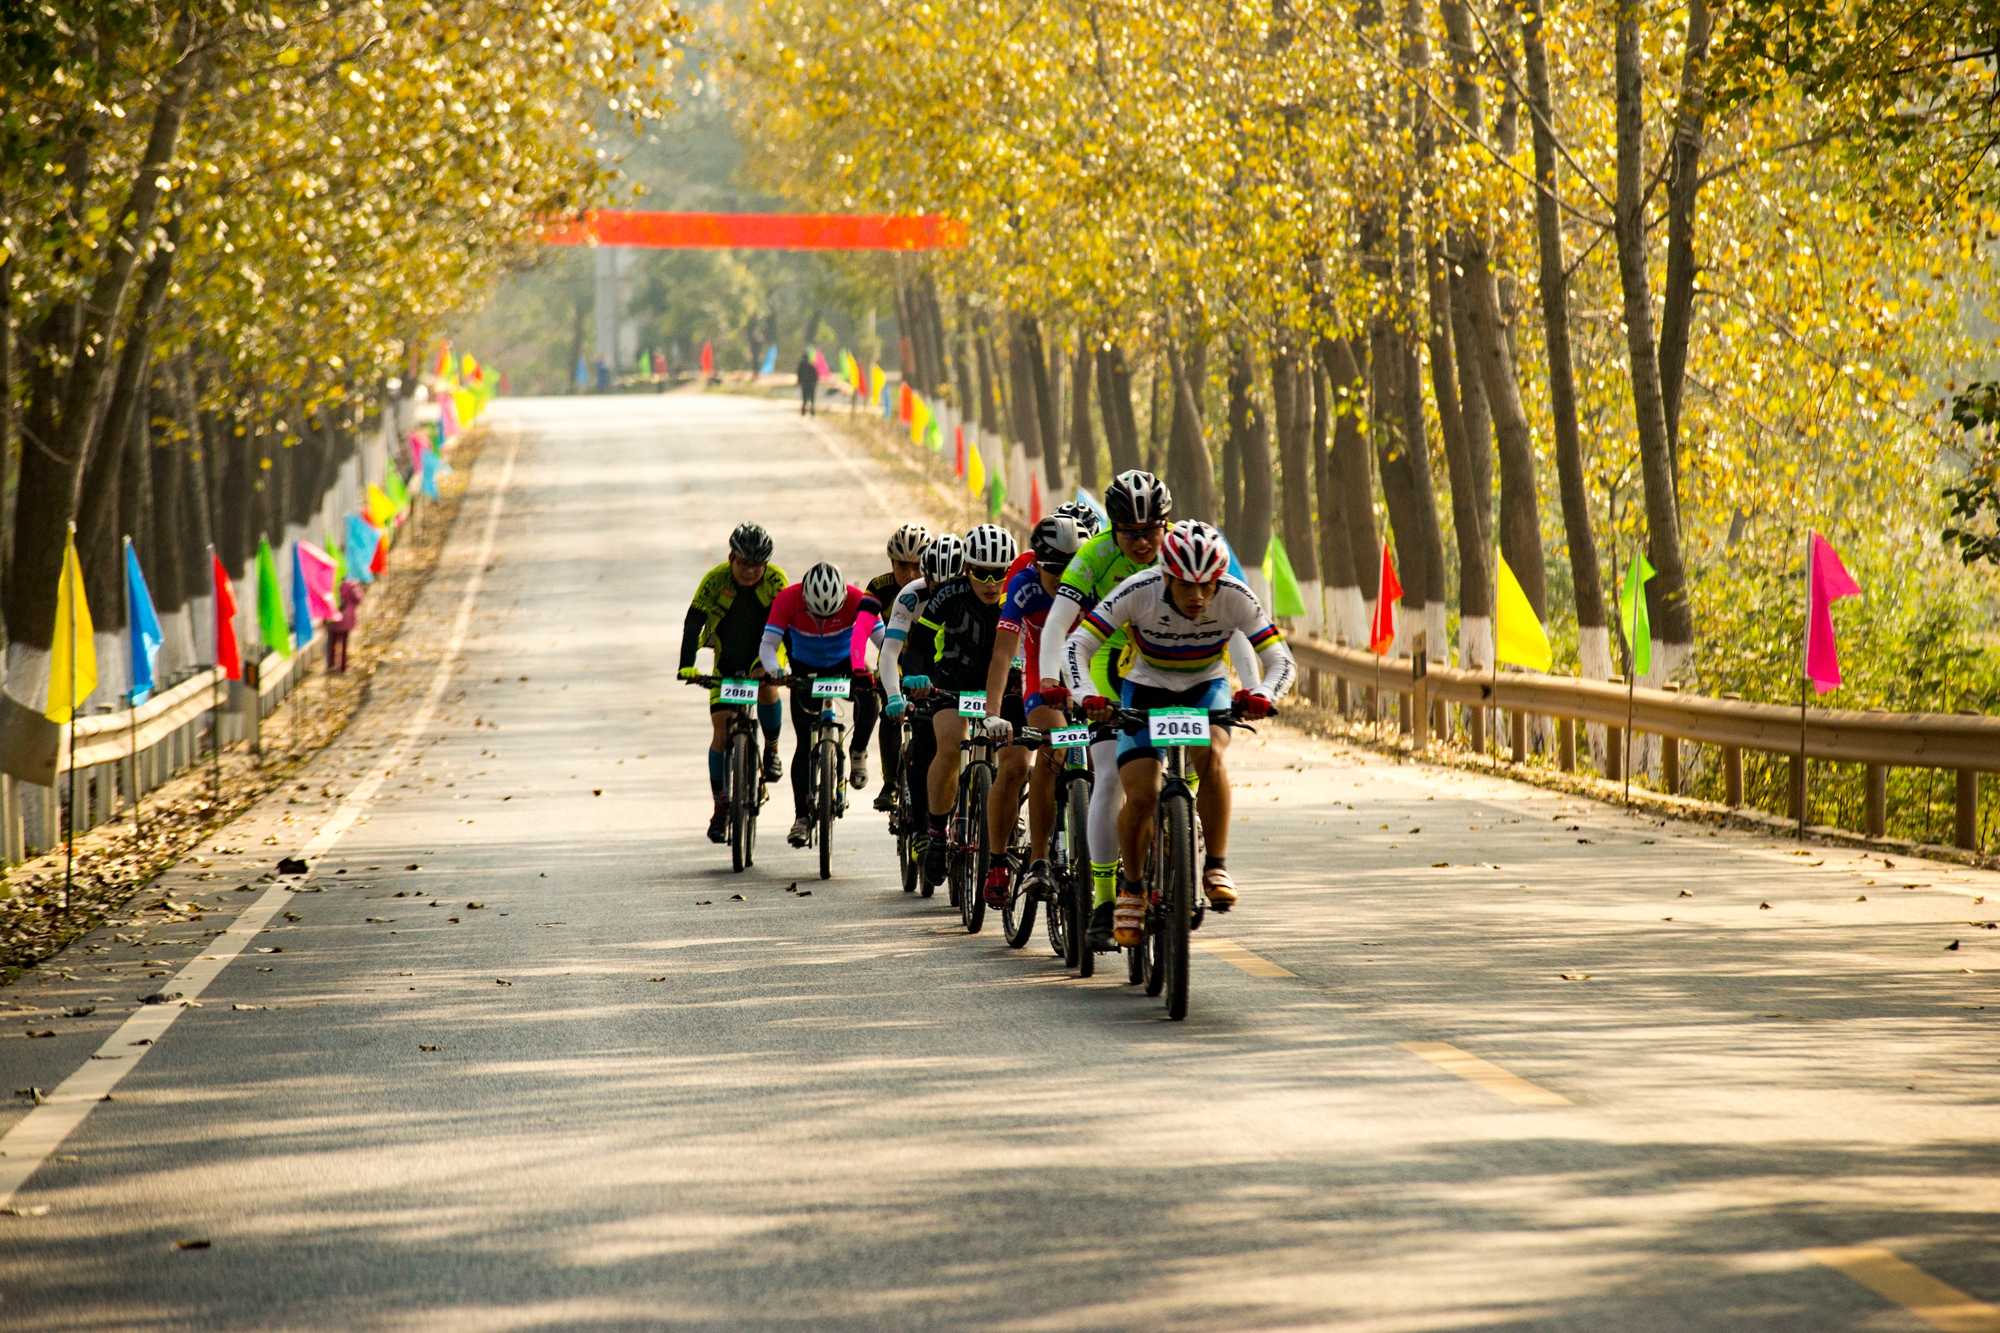 “崇尚人人体育 共创美好生活”湖北省自行车联赛·安陆站即将启幕